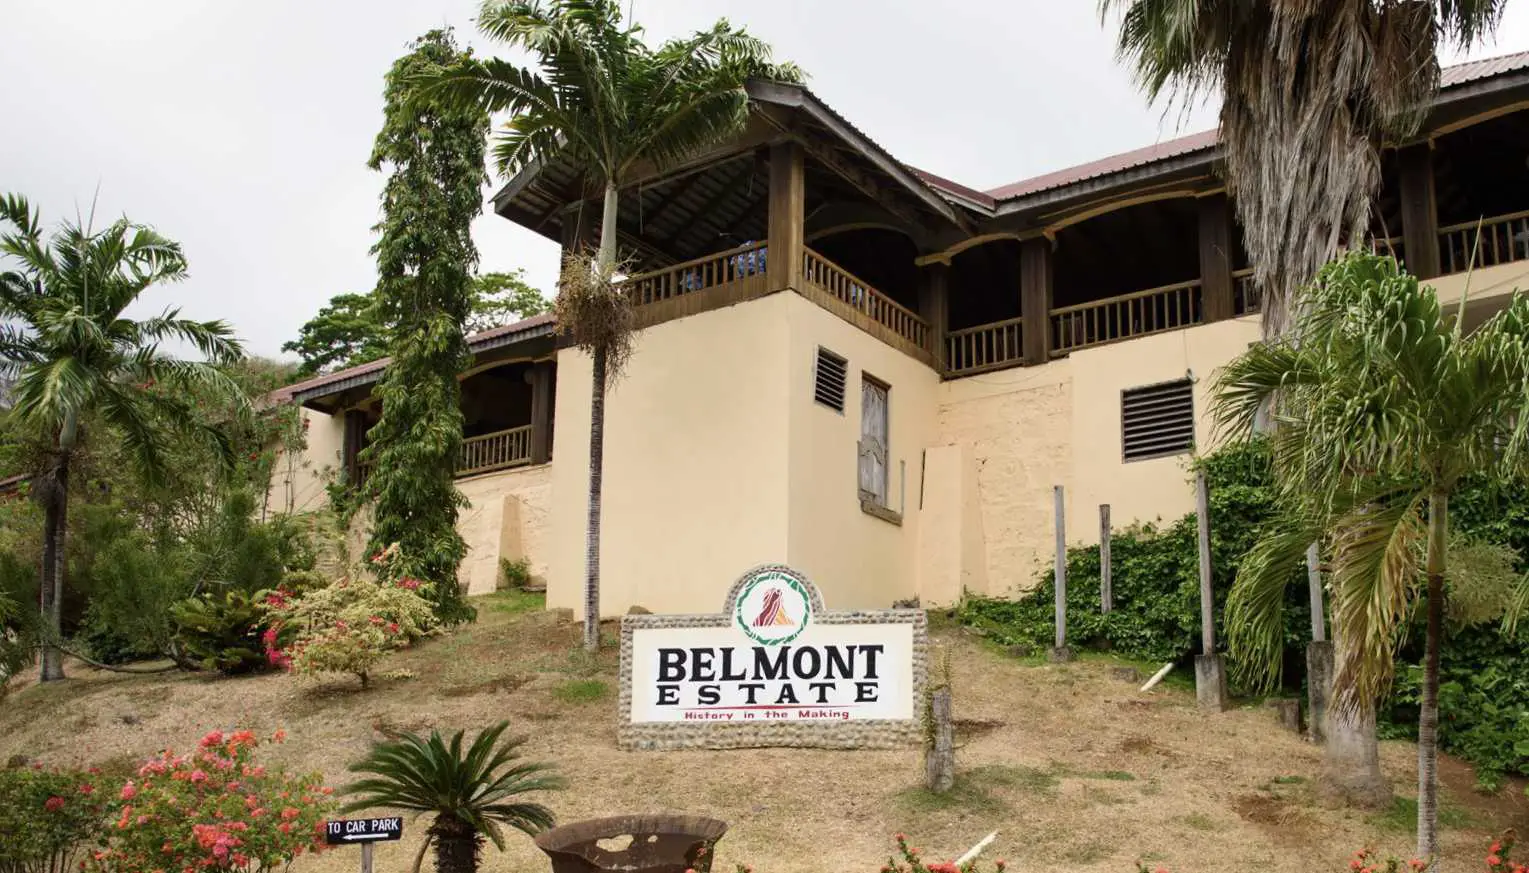 Belmont Estate building in Grenada